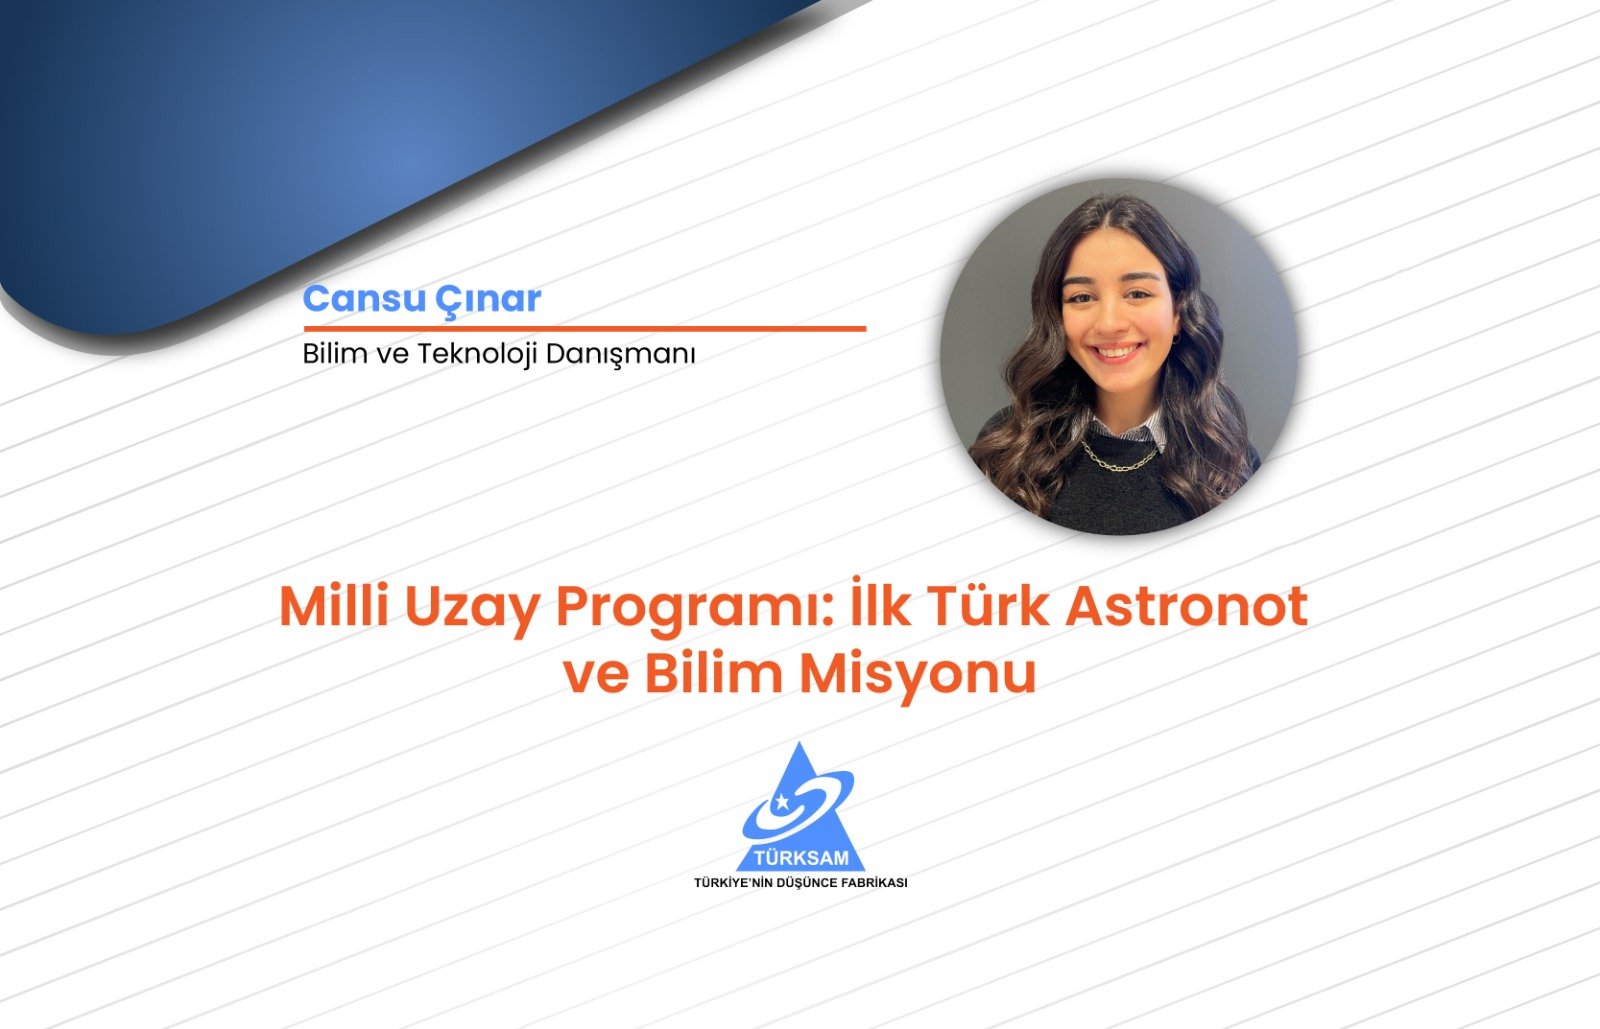 Milli Uzay Programı: İlk Türk Astronot ve Bilim Misyonu